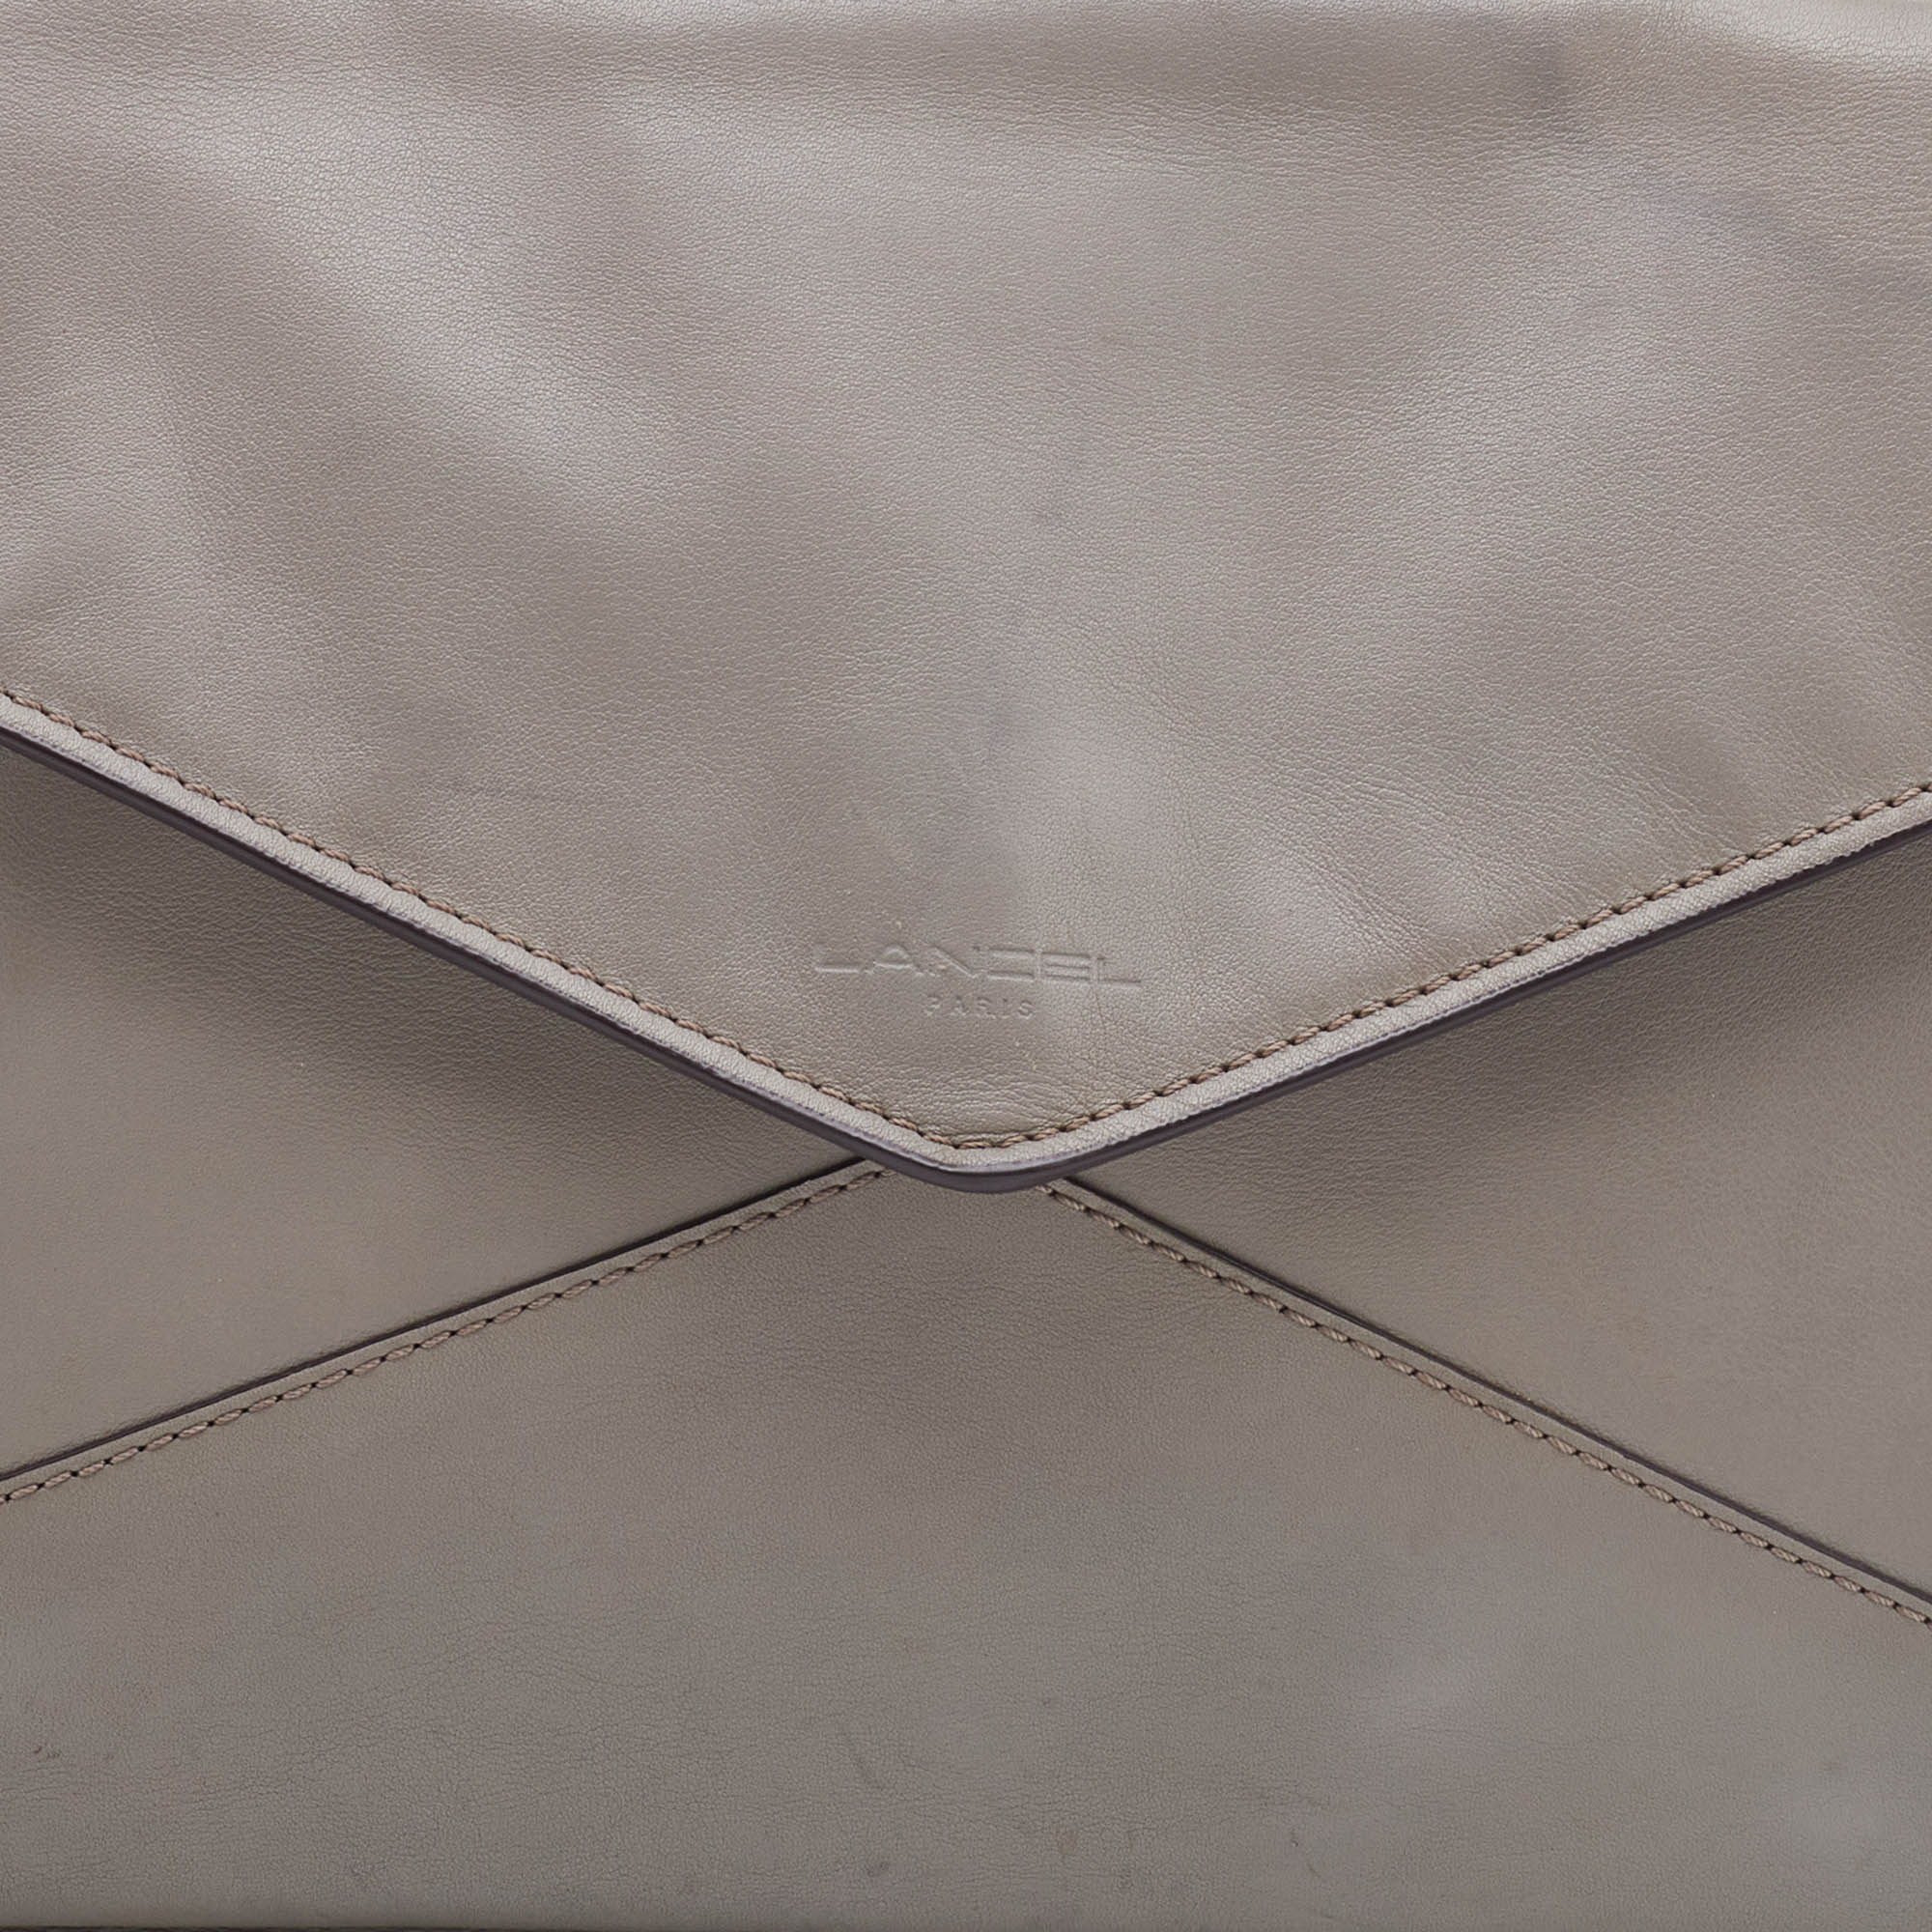 Lancel Grey Leather Envelope Flap Clutch Bag